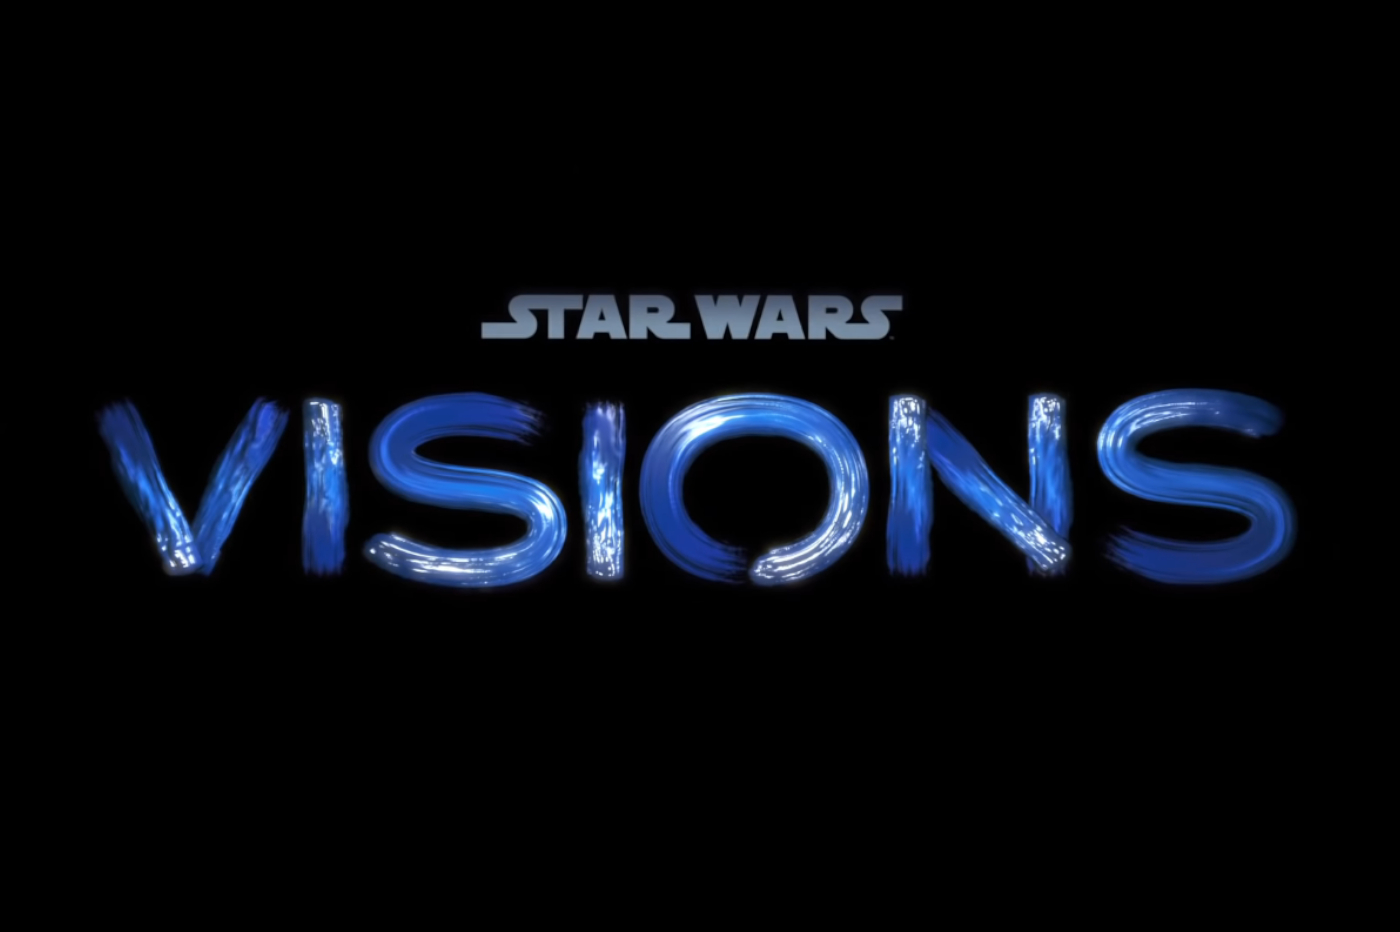 Star Wars Visions : premier aperçu de la nouvelle série animée de la franchise